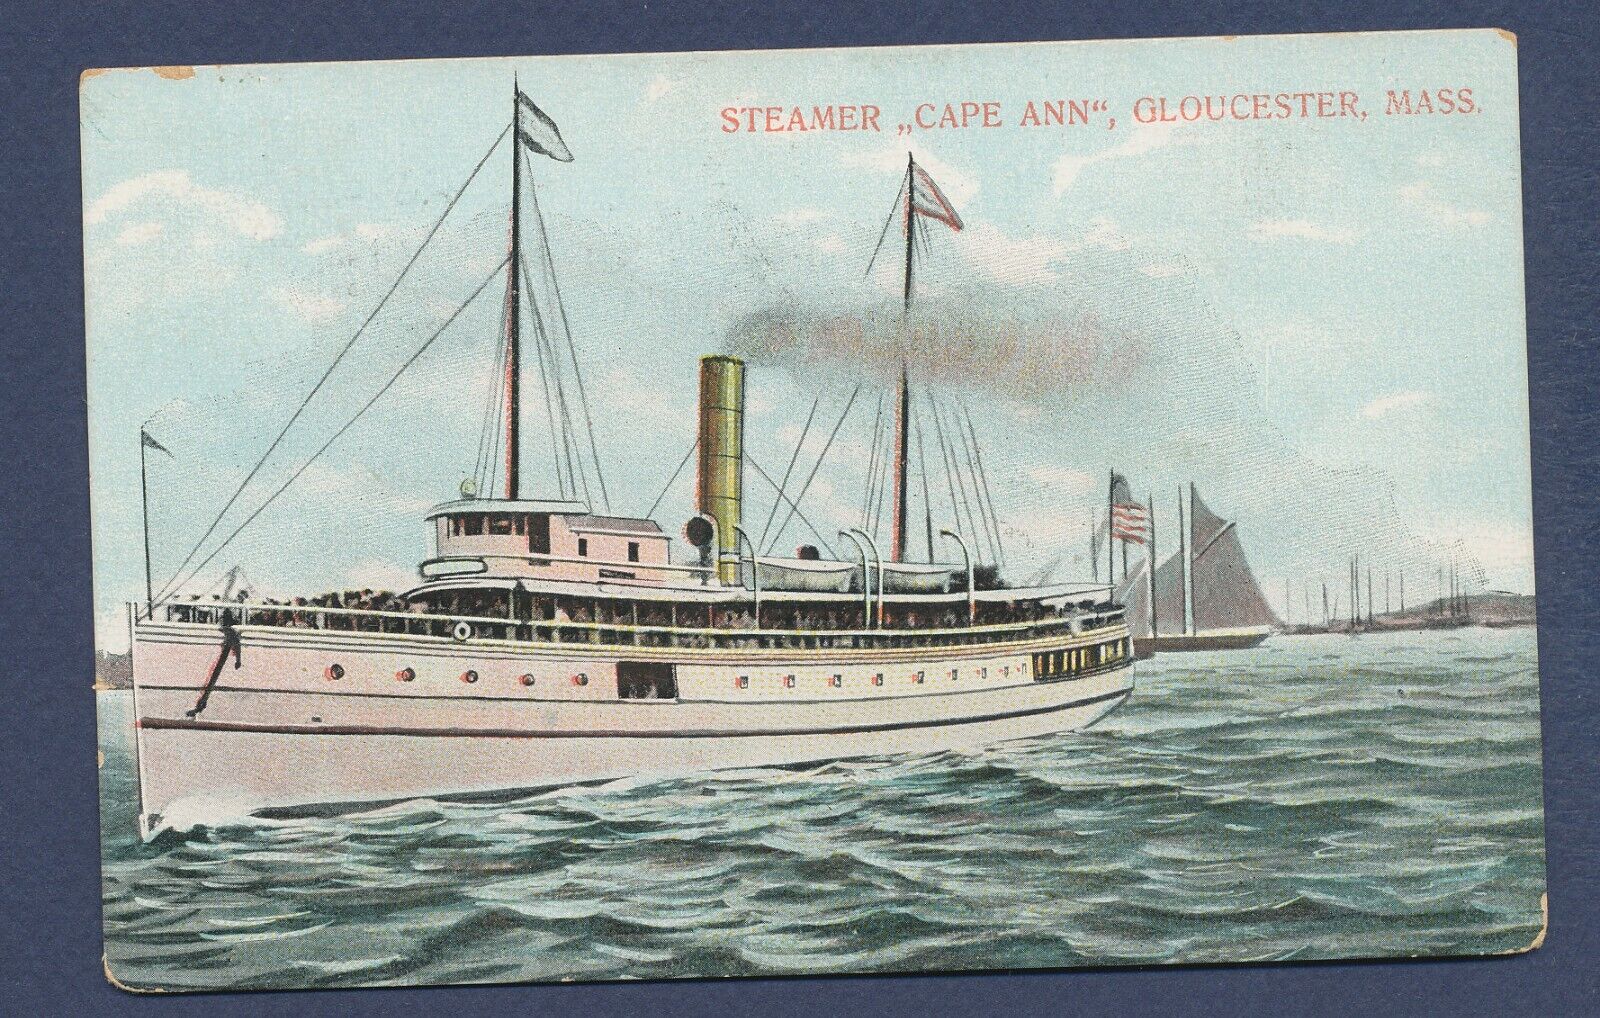 Steamer CAPE ANN - Gloucester Mass - flag postmark Gloucester 1908